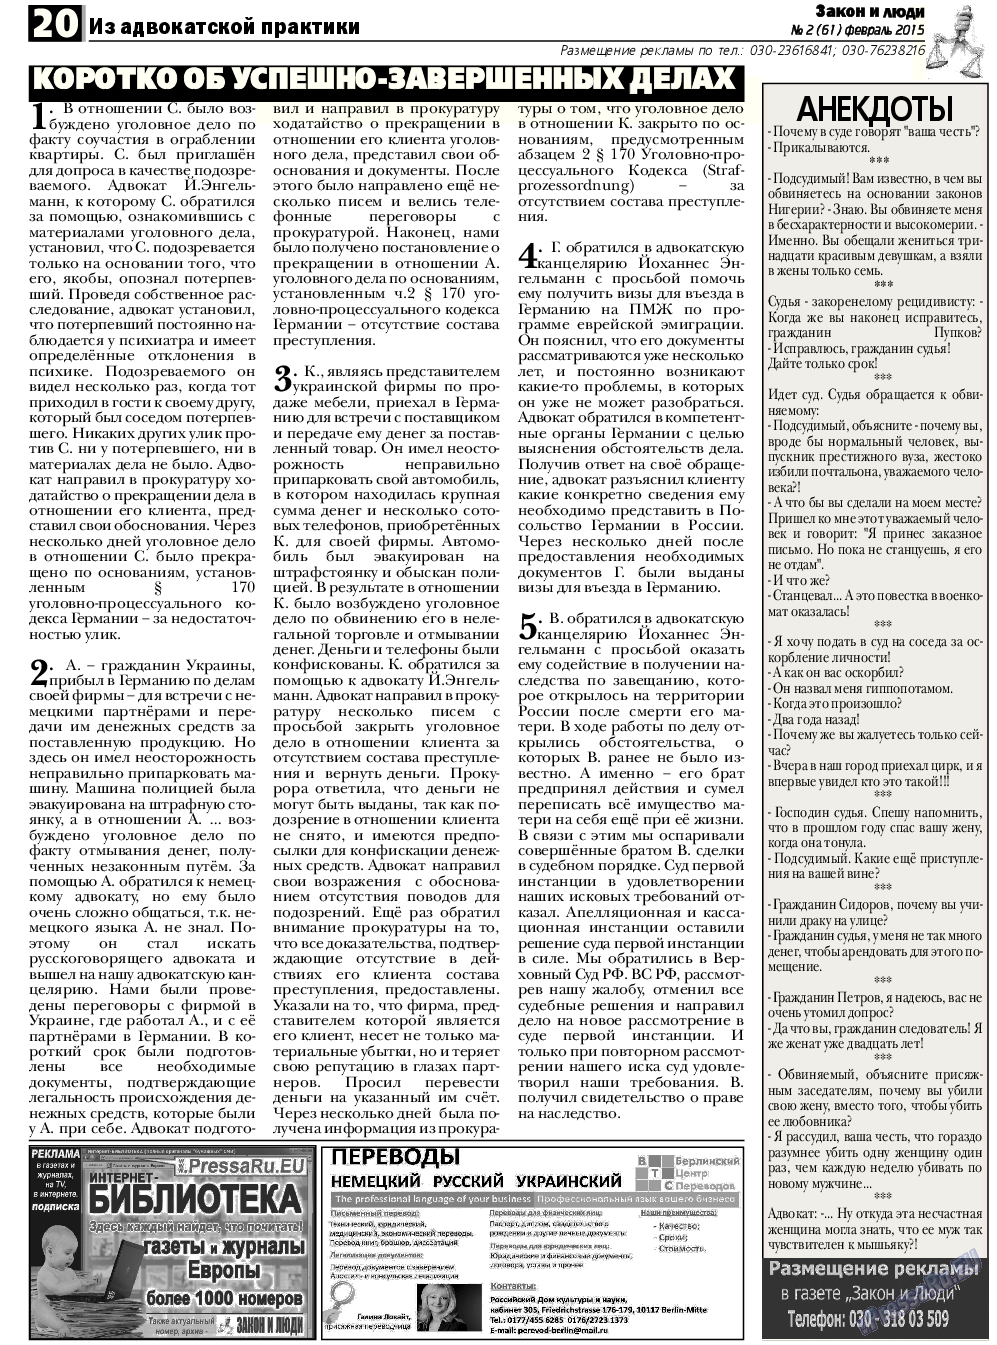 Закон и люди, газета. 2015 №2 стр.20